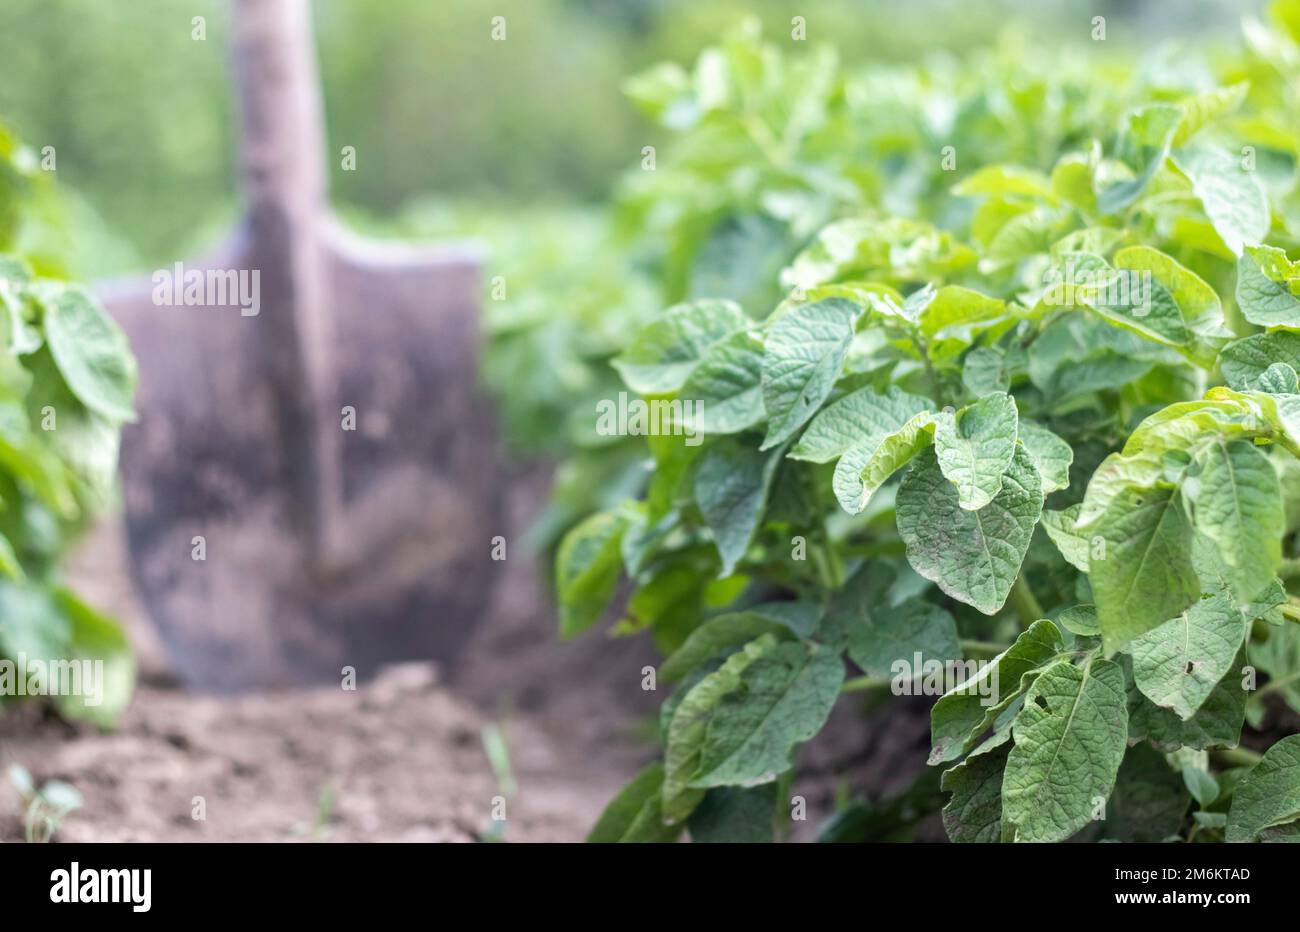 Schaufel auf dem Hintergrund von Kartoffelsträuchern. Eine junge Kartoffelknolle auf einem Bauernhof auszugraben. Kartoffeln mit einem Sch graben Stockfoto